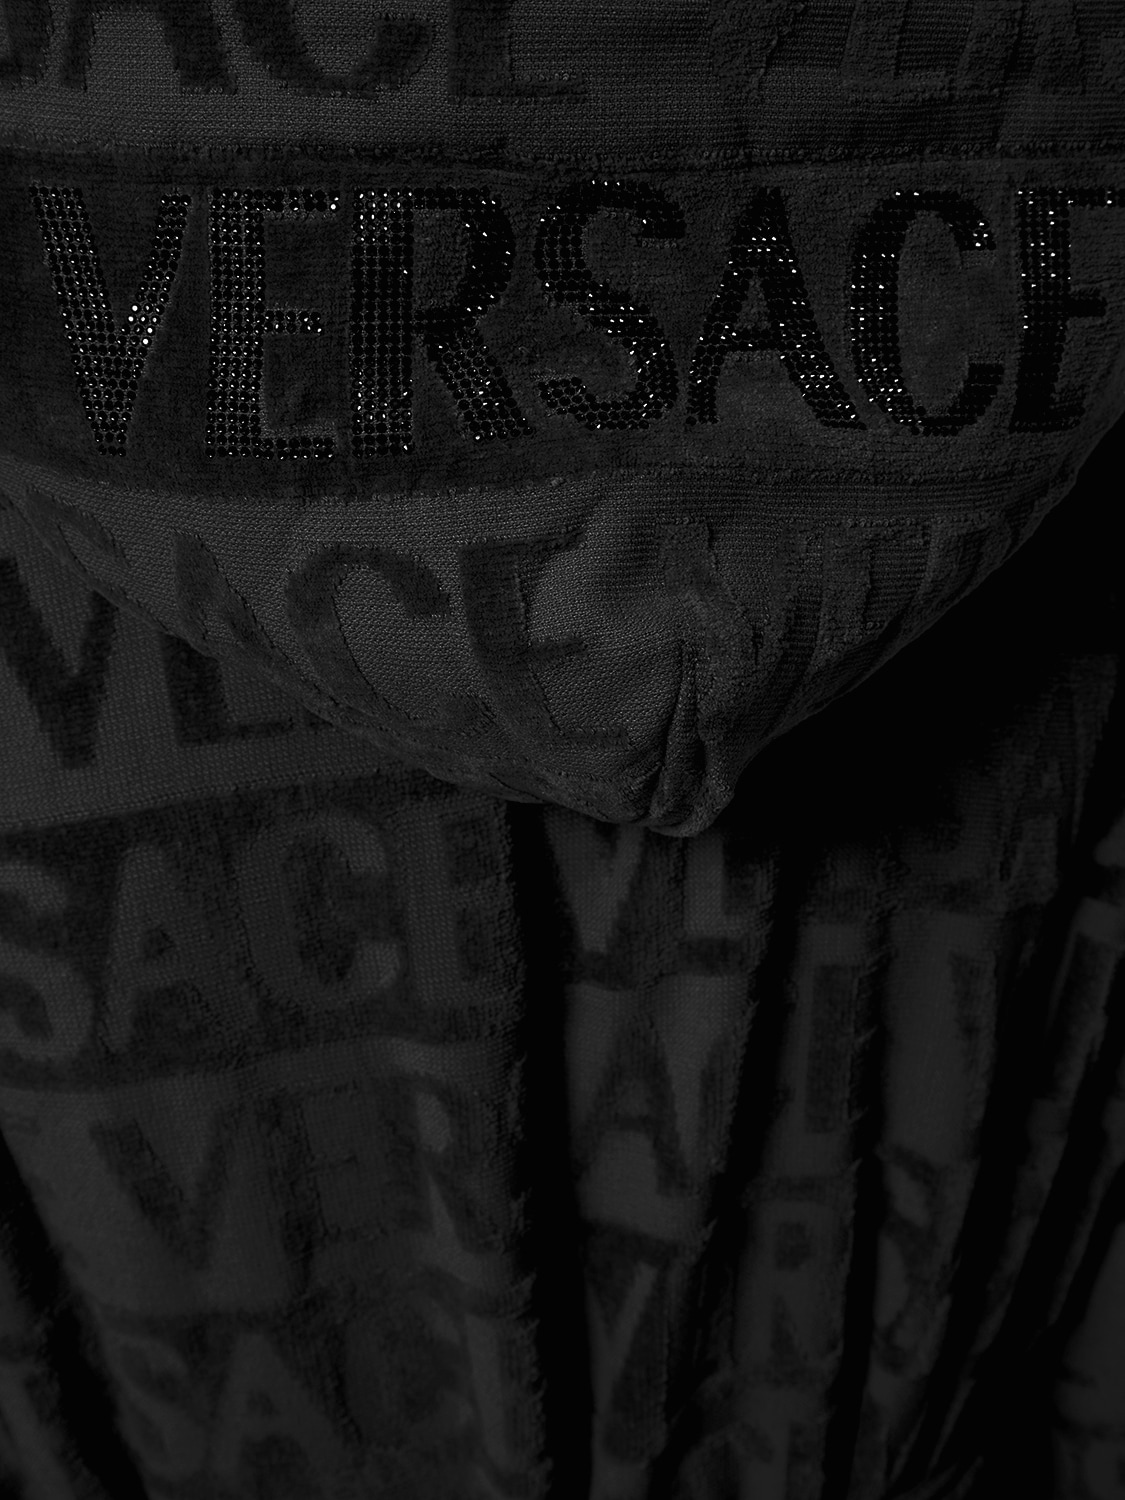 Shop Versace Crystal Hooded Bath Robe In Black